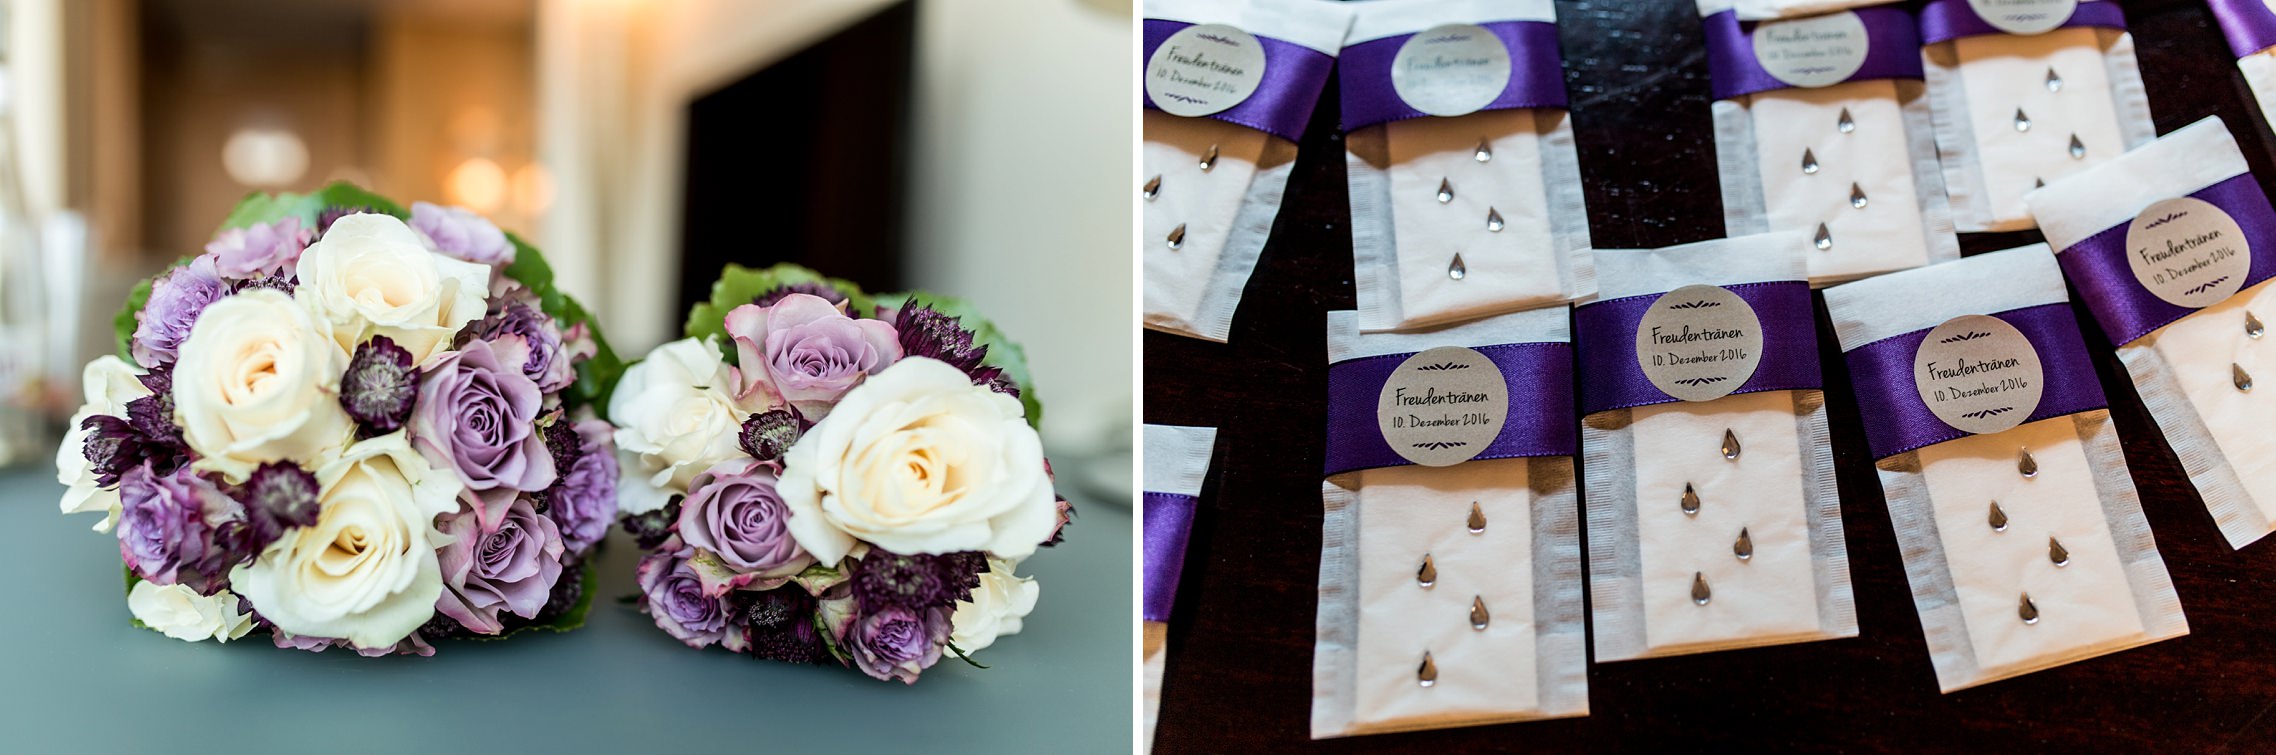 Blumenschmuck und Taschentücher für Freudentränen auf einer Hochzeit